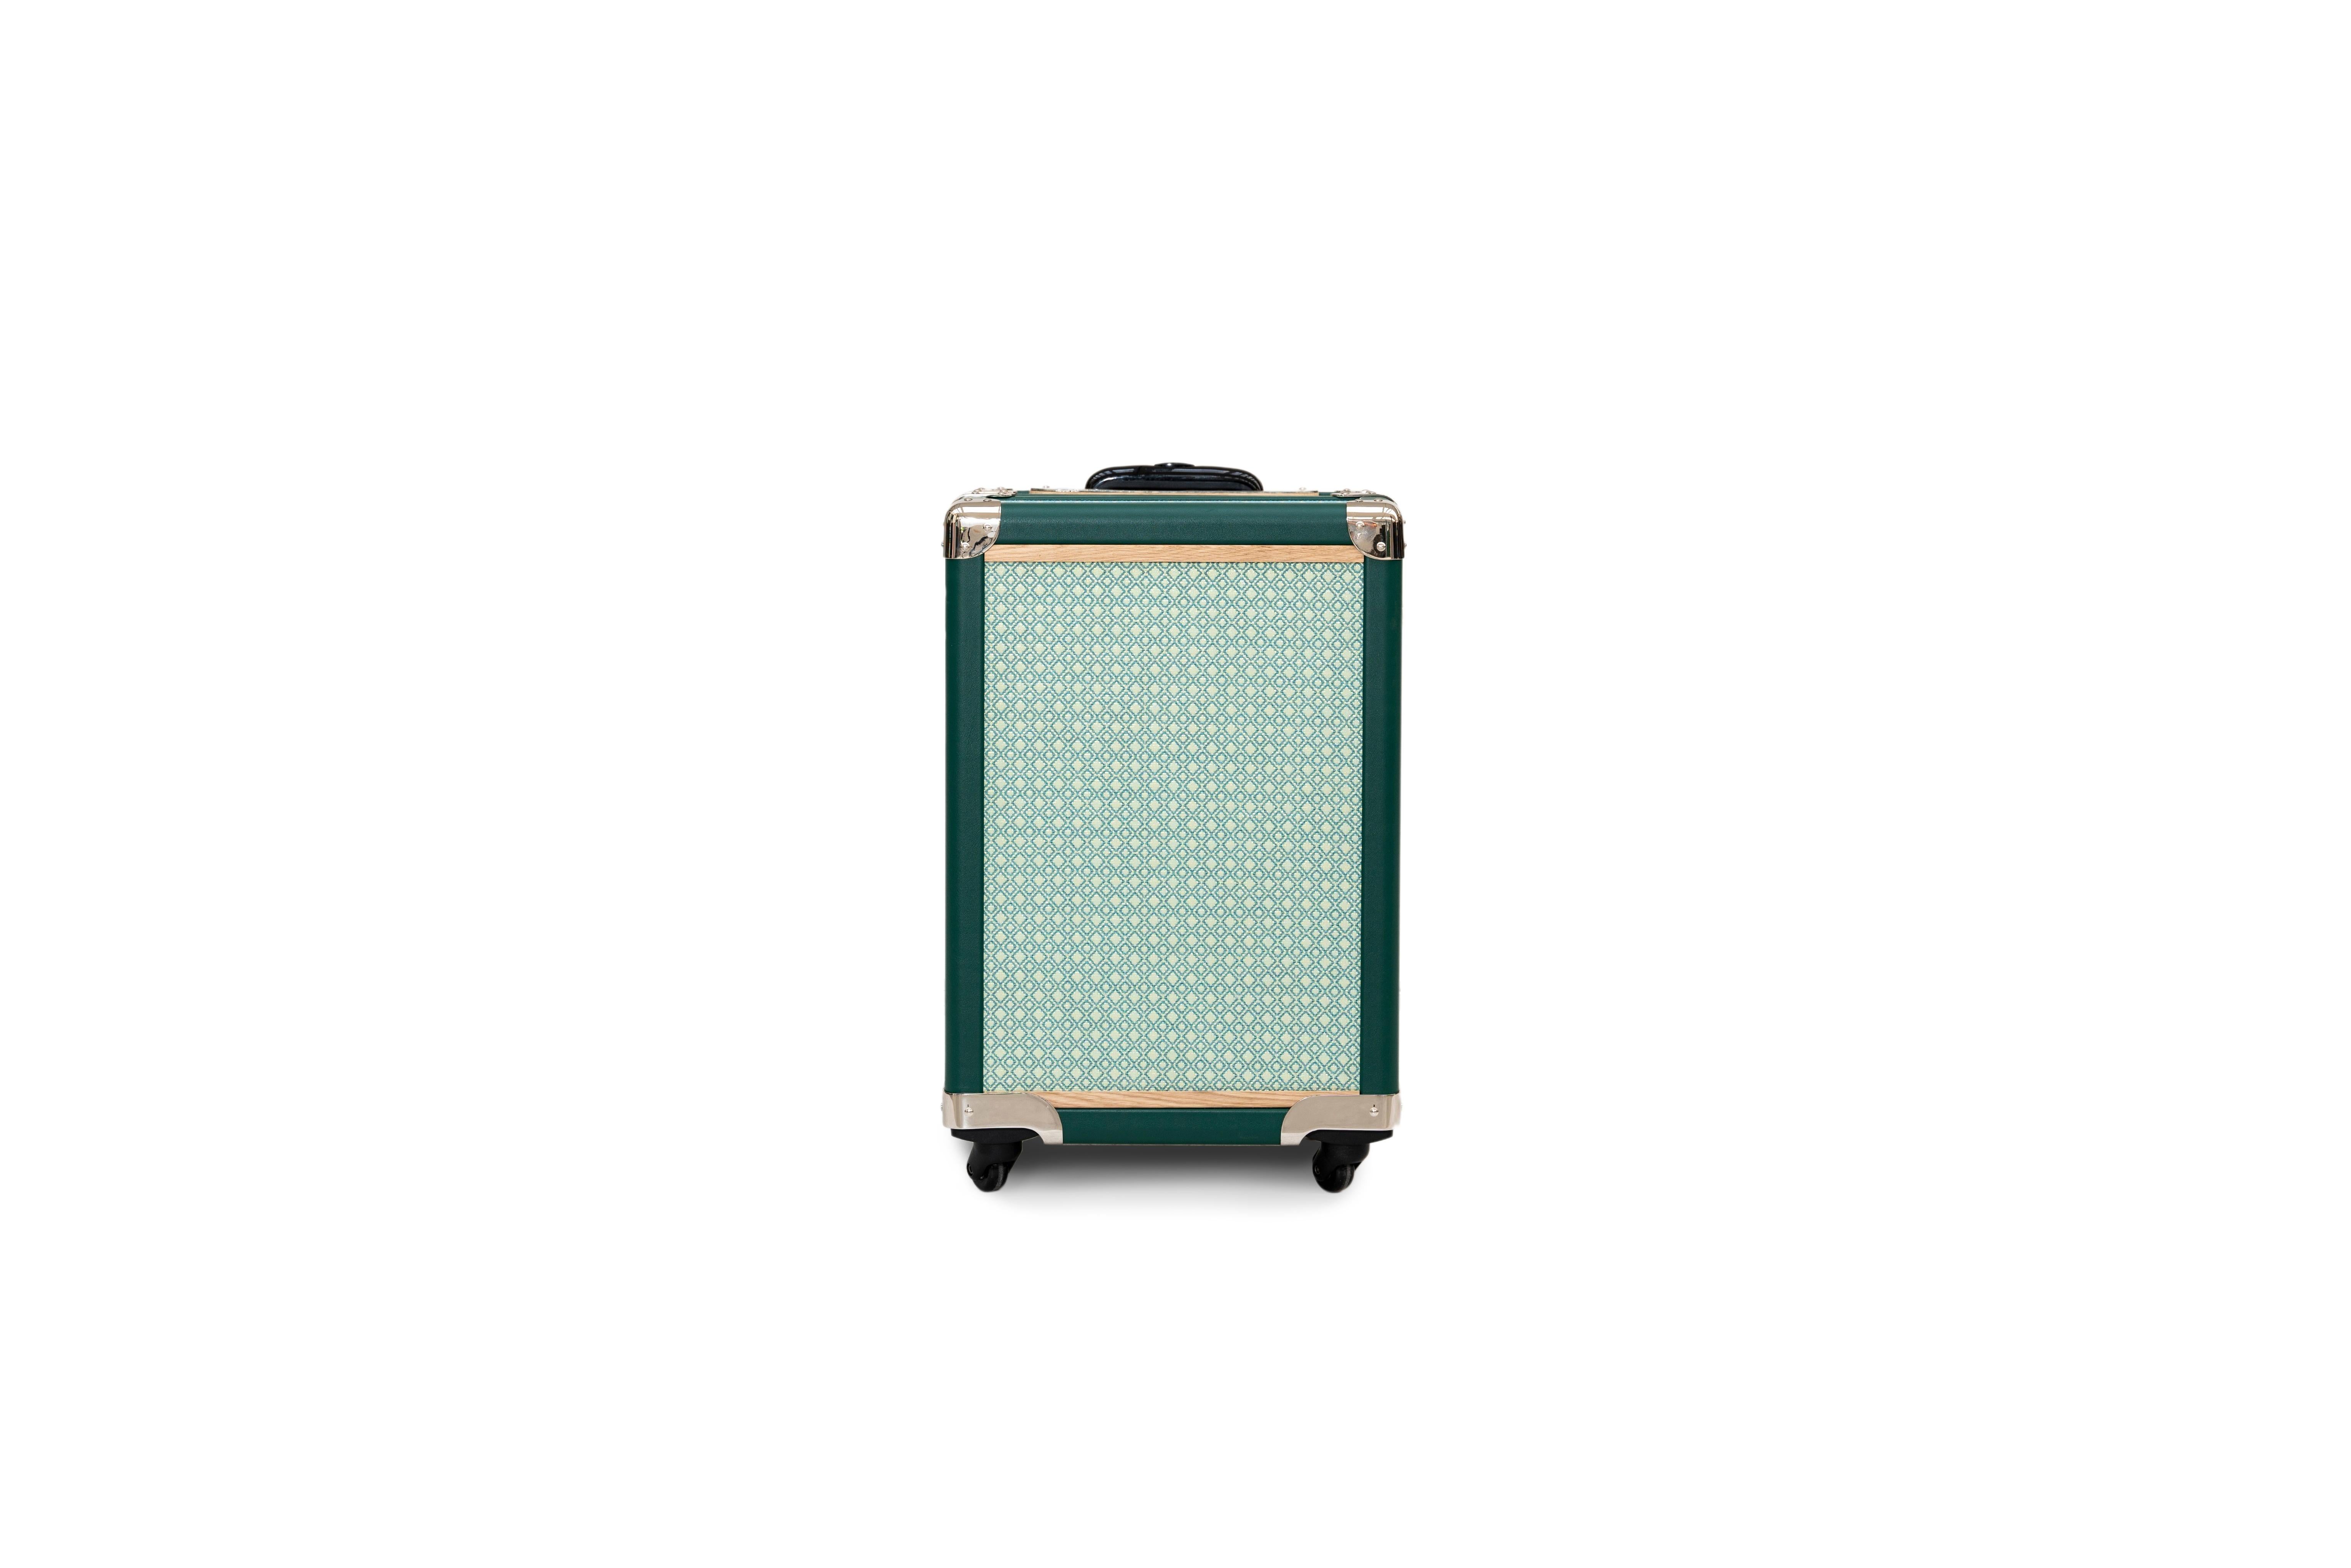 Italian PORTOFINO - Green trolley - Your travel companion For Sale